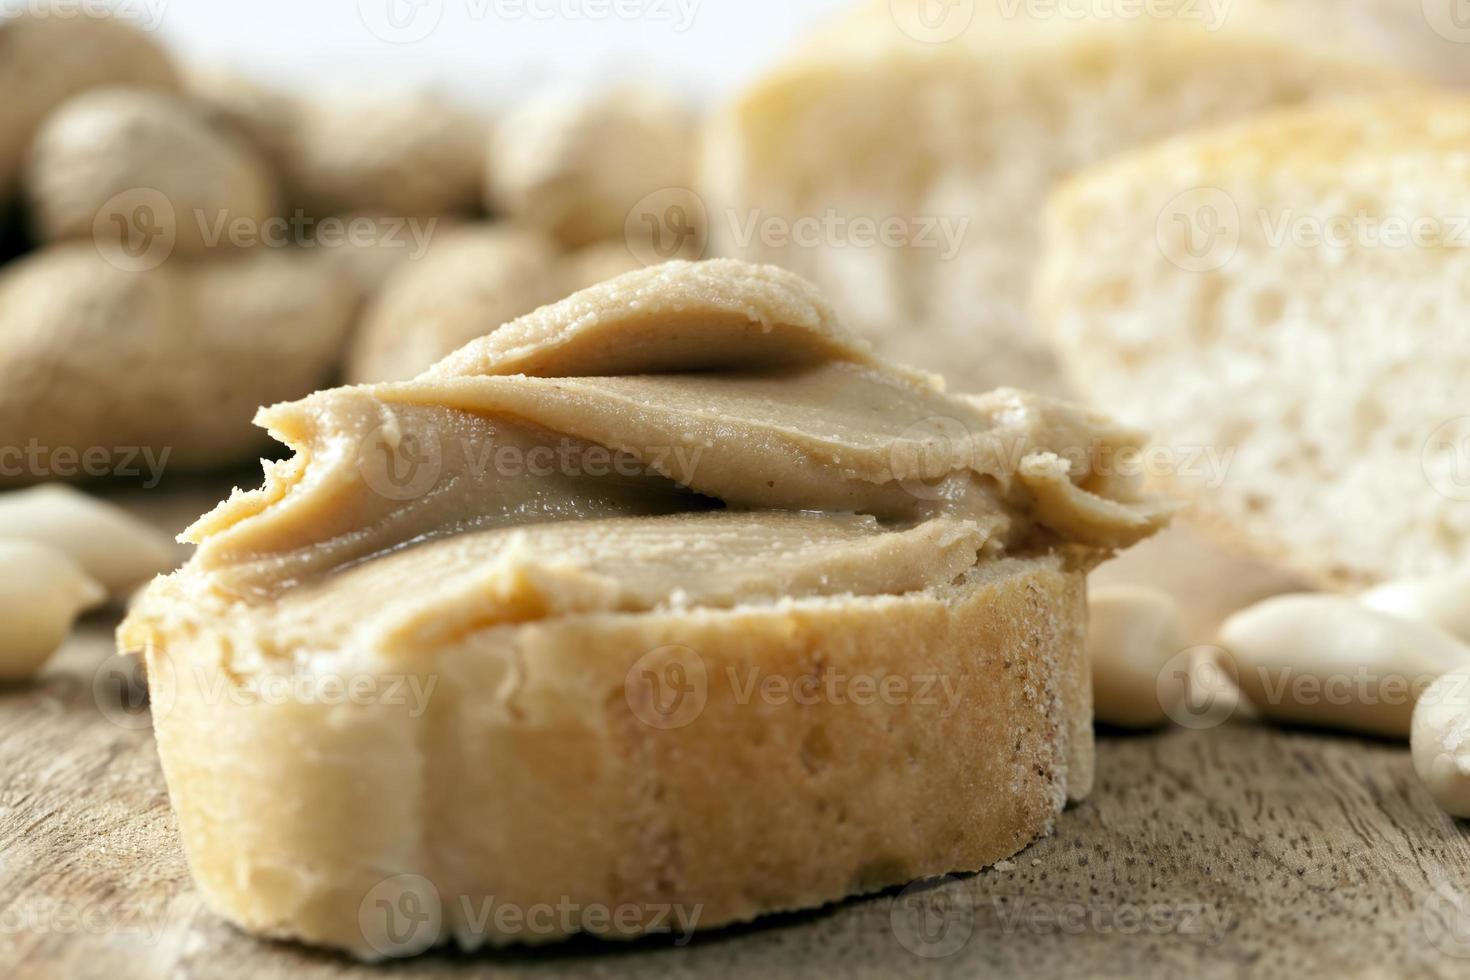 burro di arachidi usato per fare i panini con il pane foto